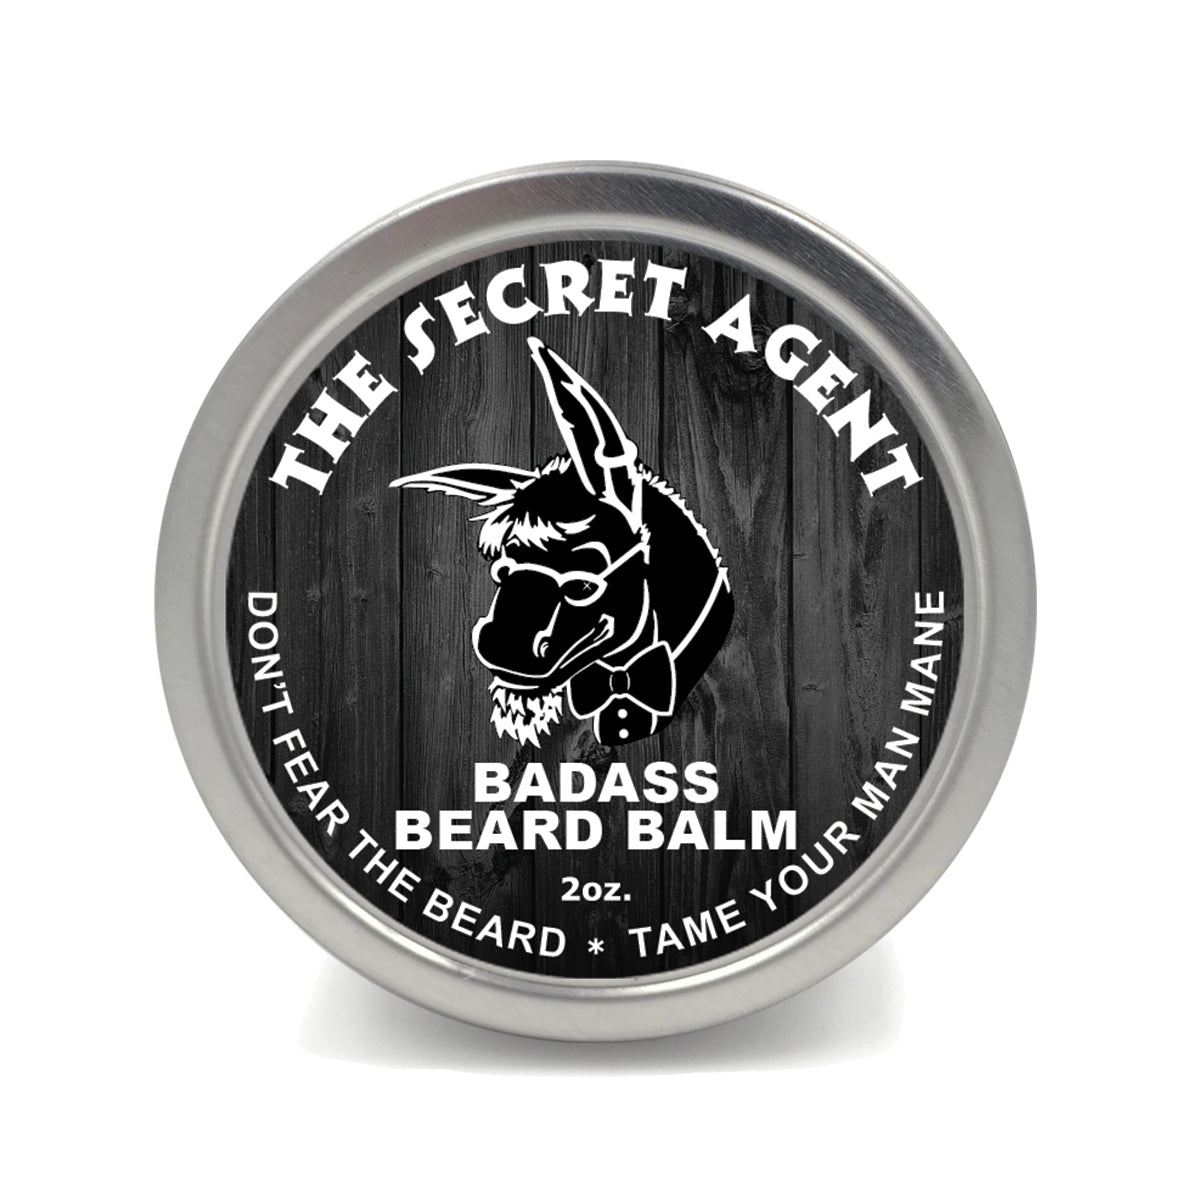 The Secret Agent Beard Balm